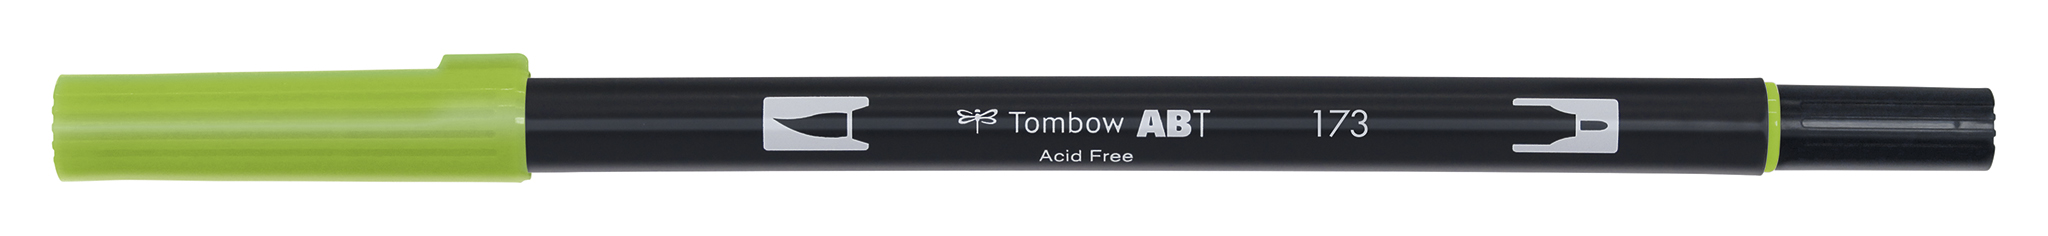 Tombow Art Brush Pen, willow green